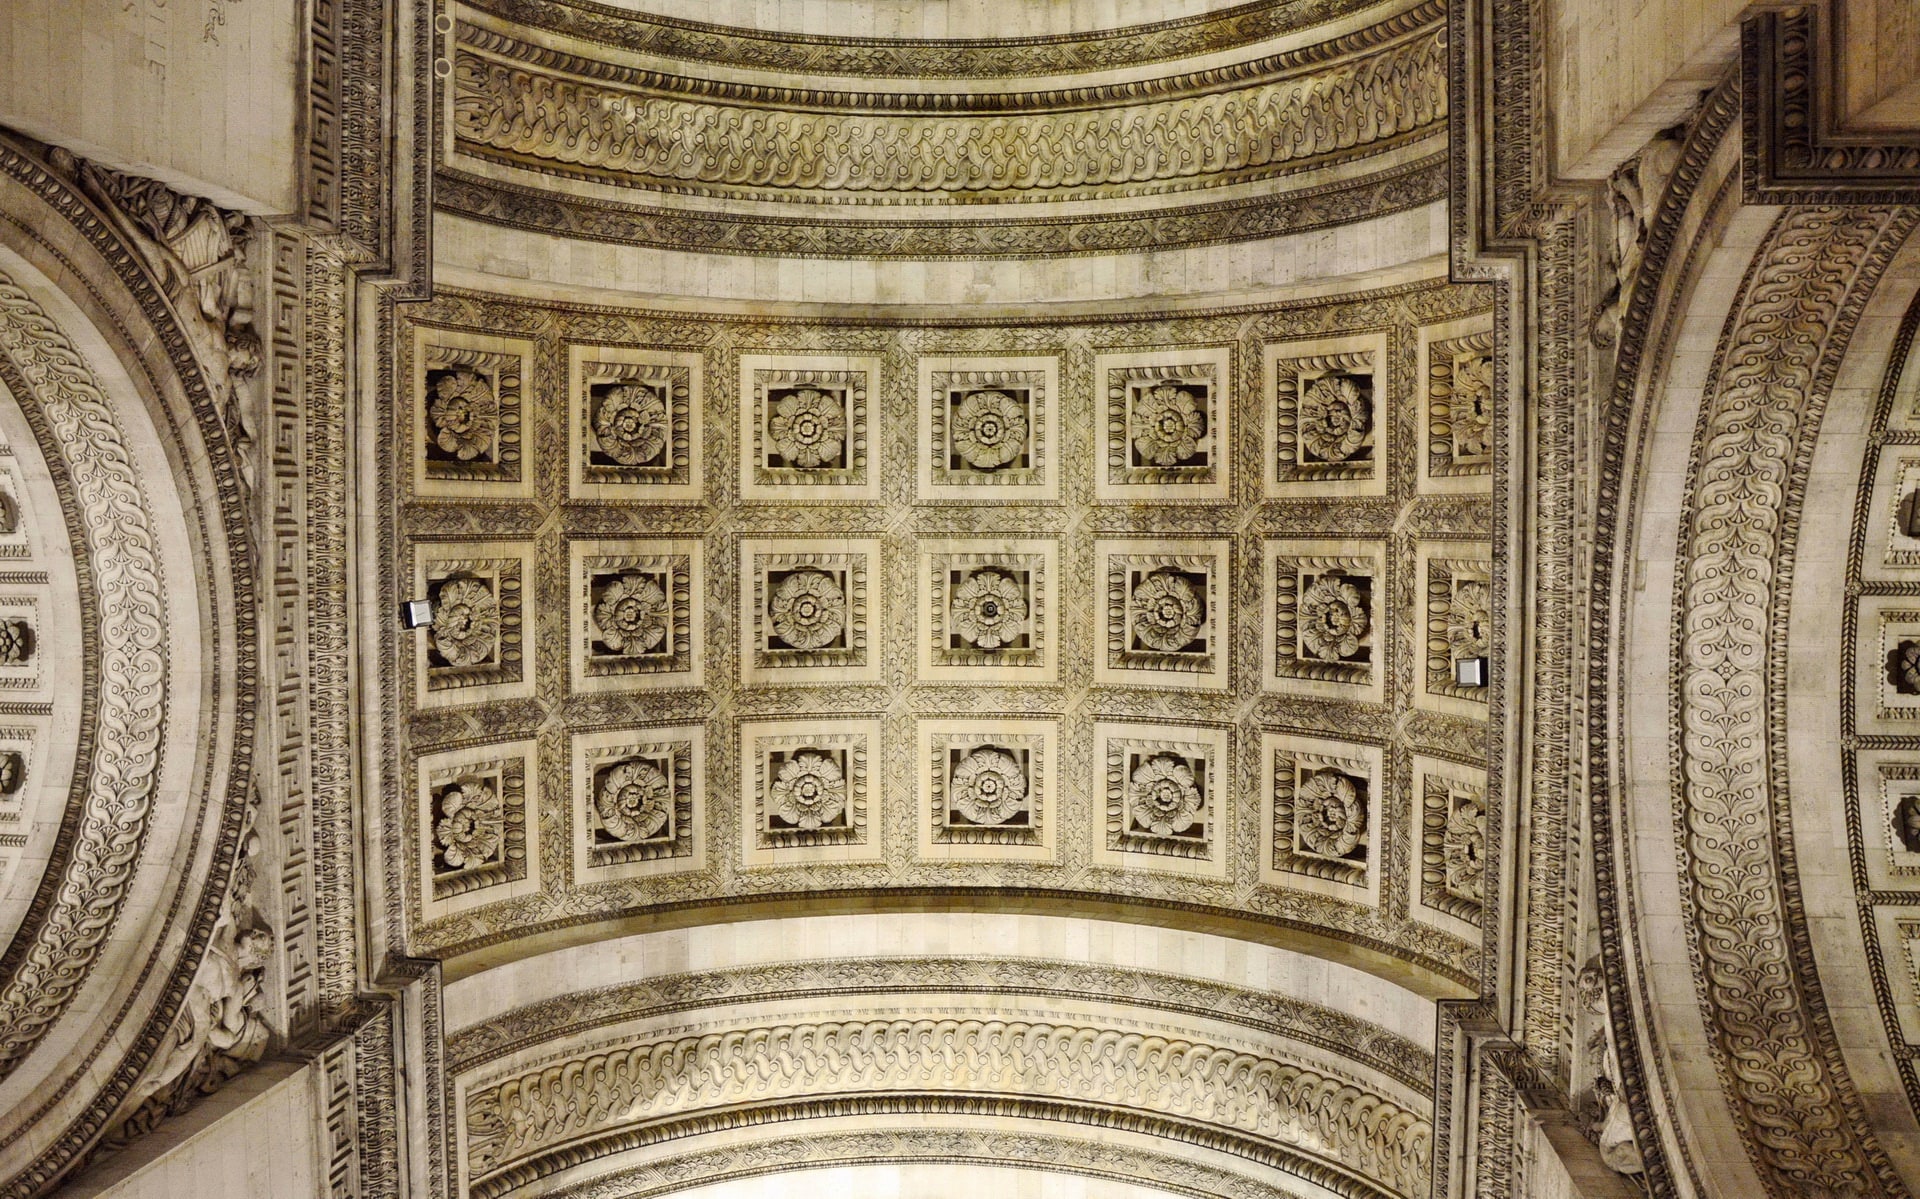 Under the Arc de Triomphe